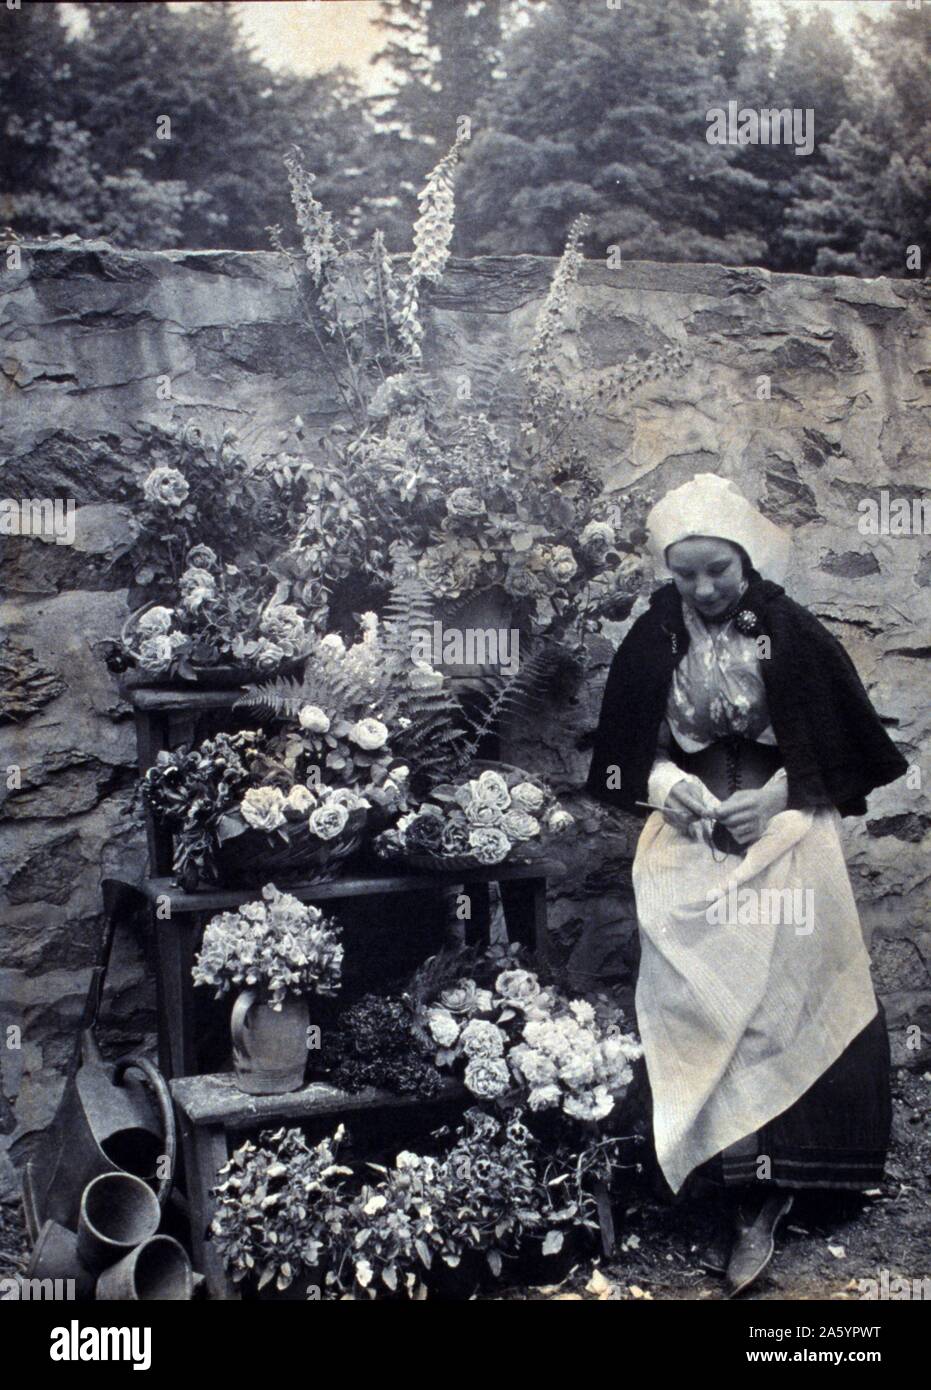 Holländische Blumenverkäuferin, Frau im holländischen Stil Kostüm stehen und stricken neben einer Steinmauer und das große Display der Blumen ca. 1900. Stockfoto